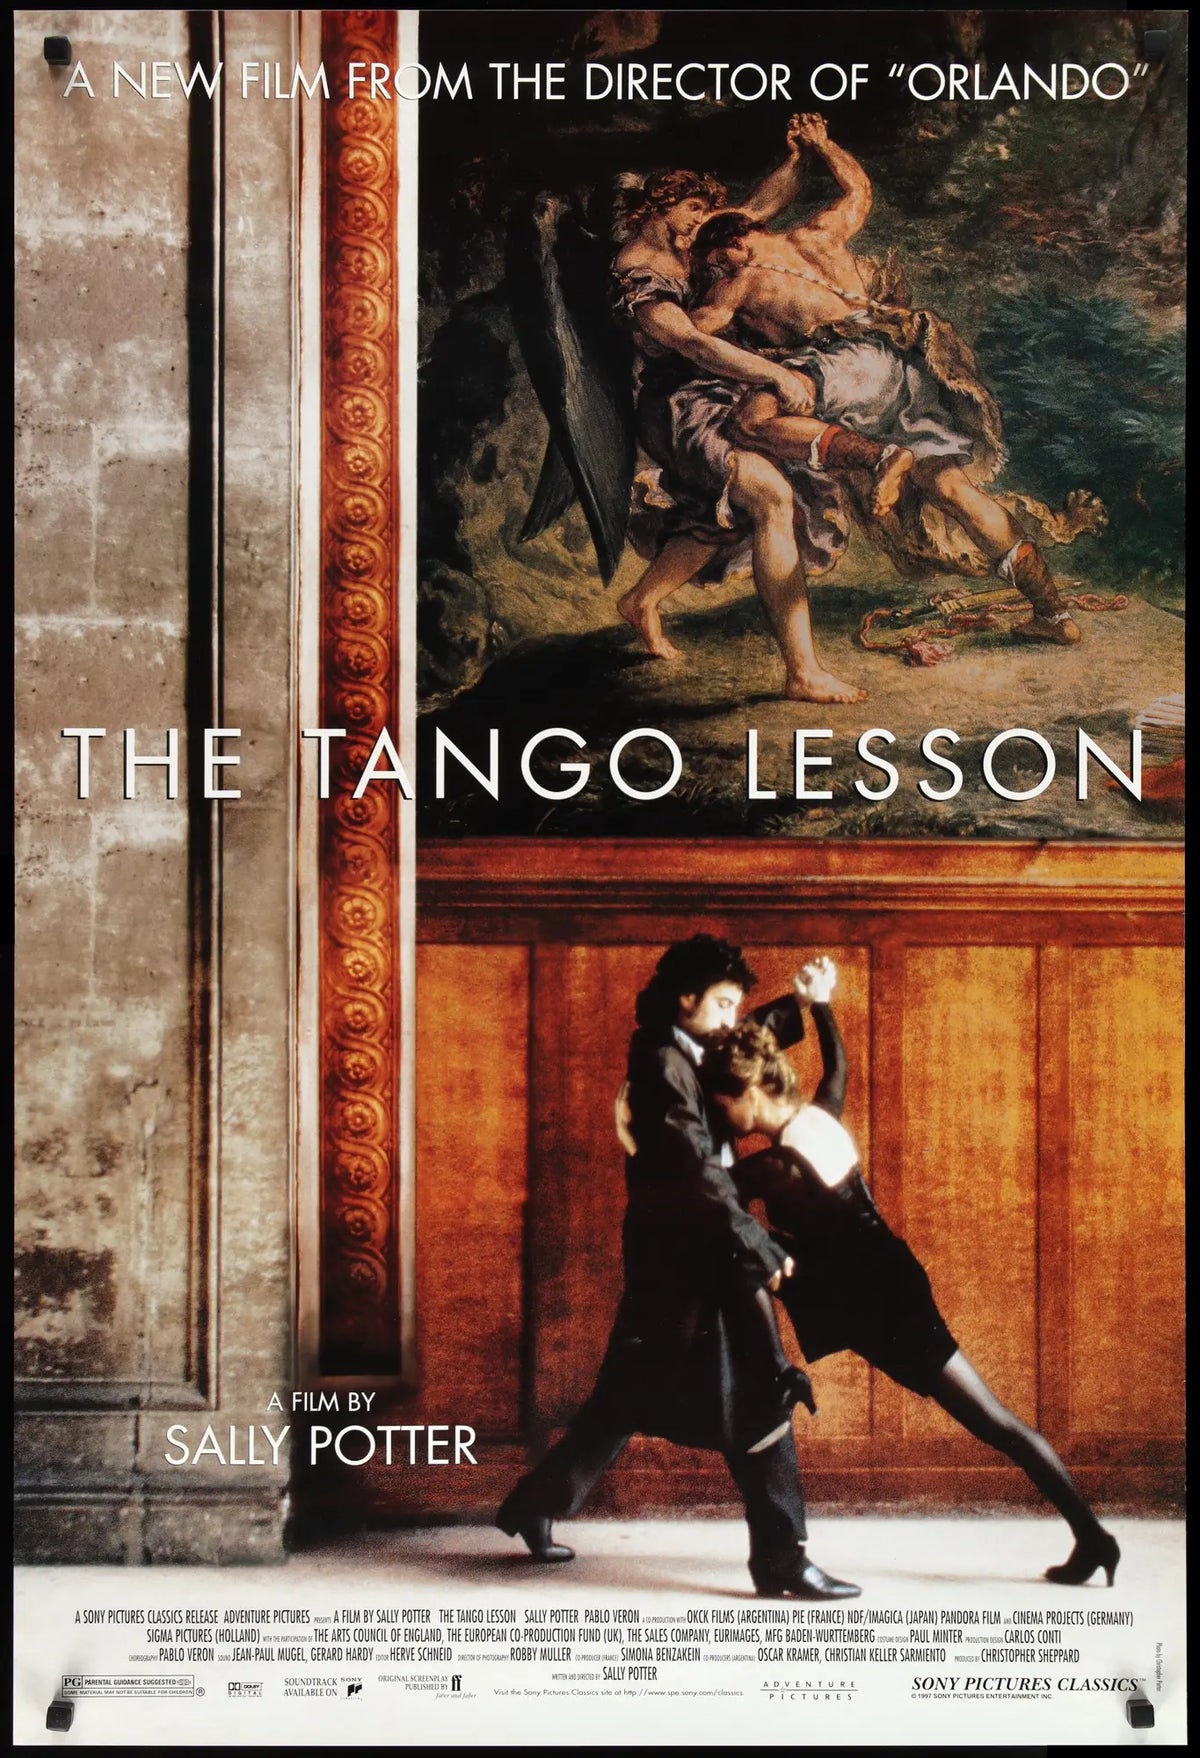 Tango Lesson (1997) original movie poster for sale at Original Film Art